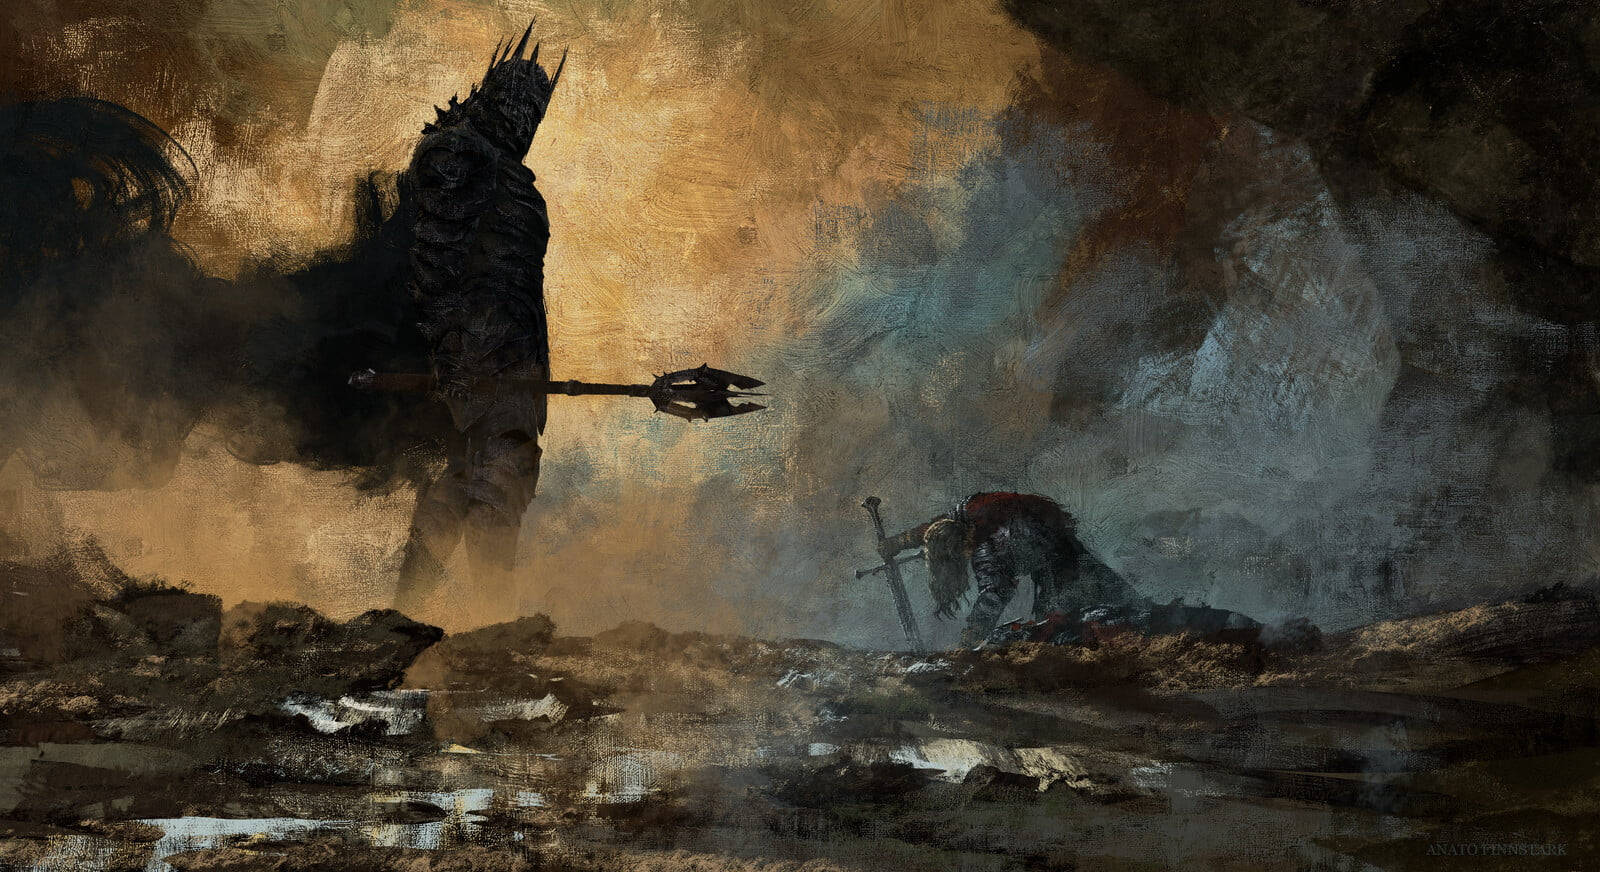 Svlord Of The Rings Landskap Sauron Wallpaper